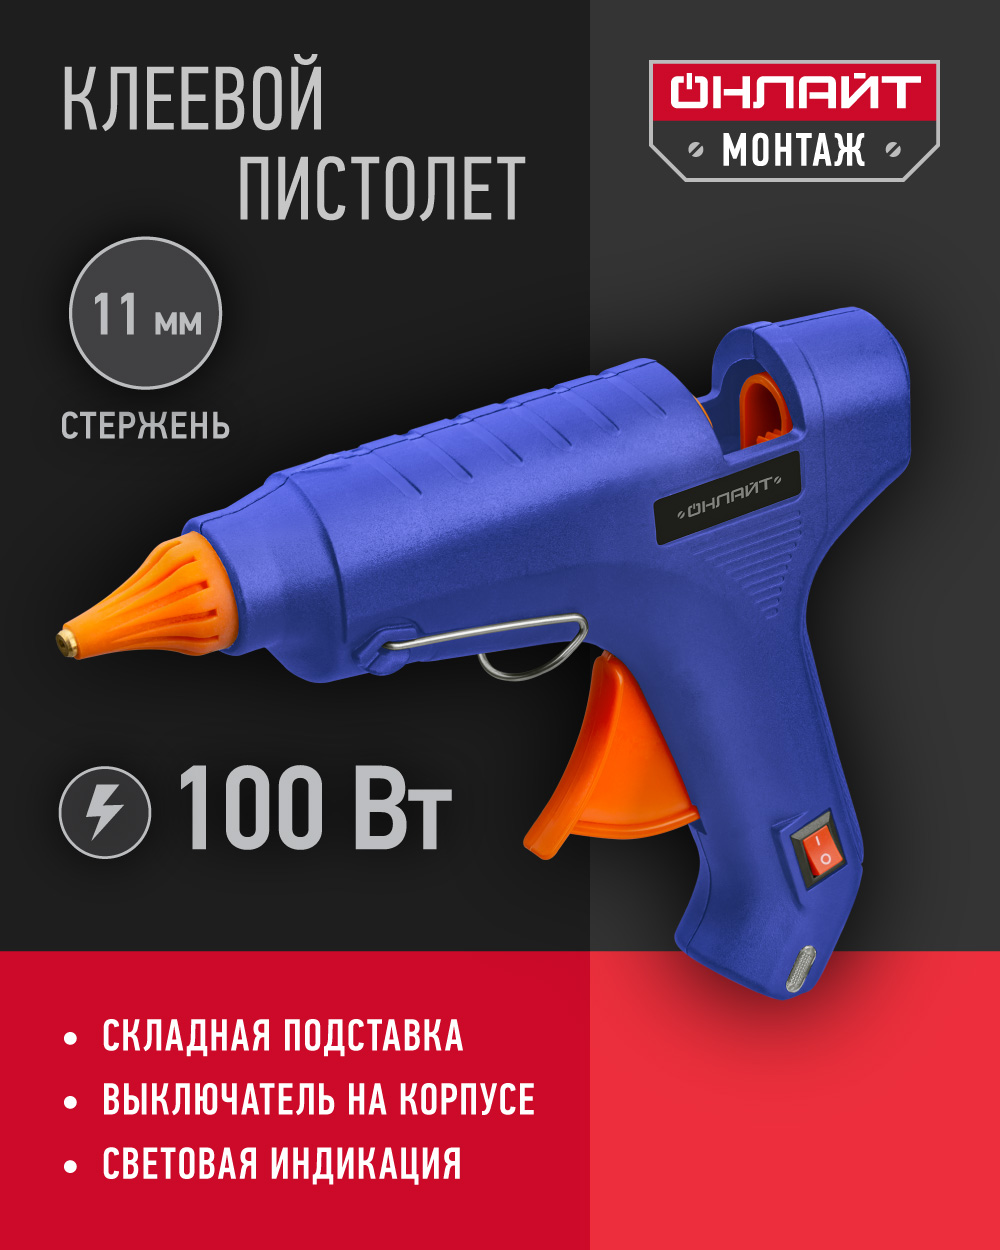 Клеевой пистолет профессиональный ОНЛАЙТ 90 088, 100 Вт, 11 мм, синий